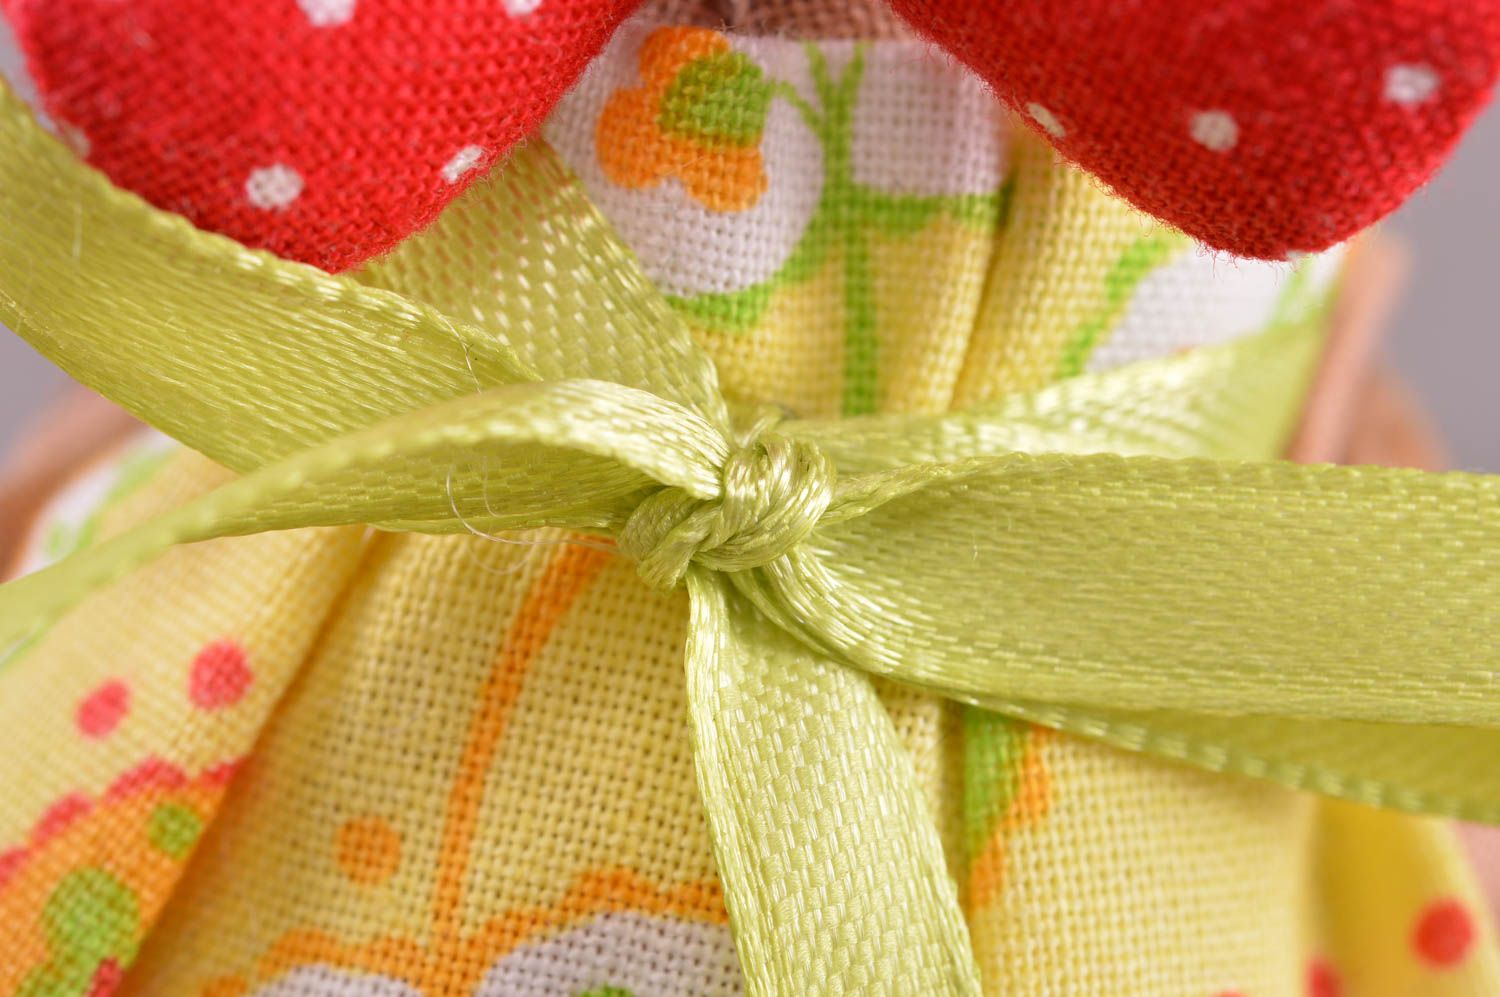 Textil Kuscheltier Huhn im gelben Kleid weich bunt handmade Spielzeug für Kinder foto 2